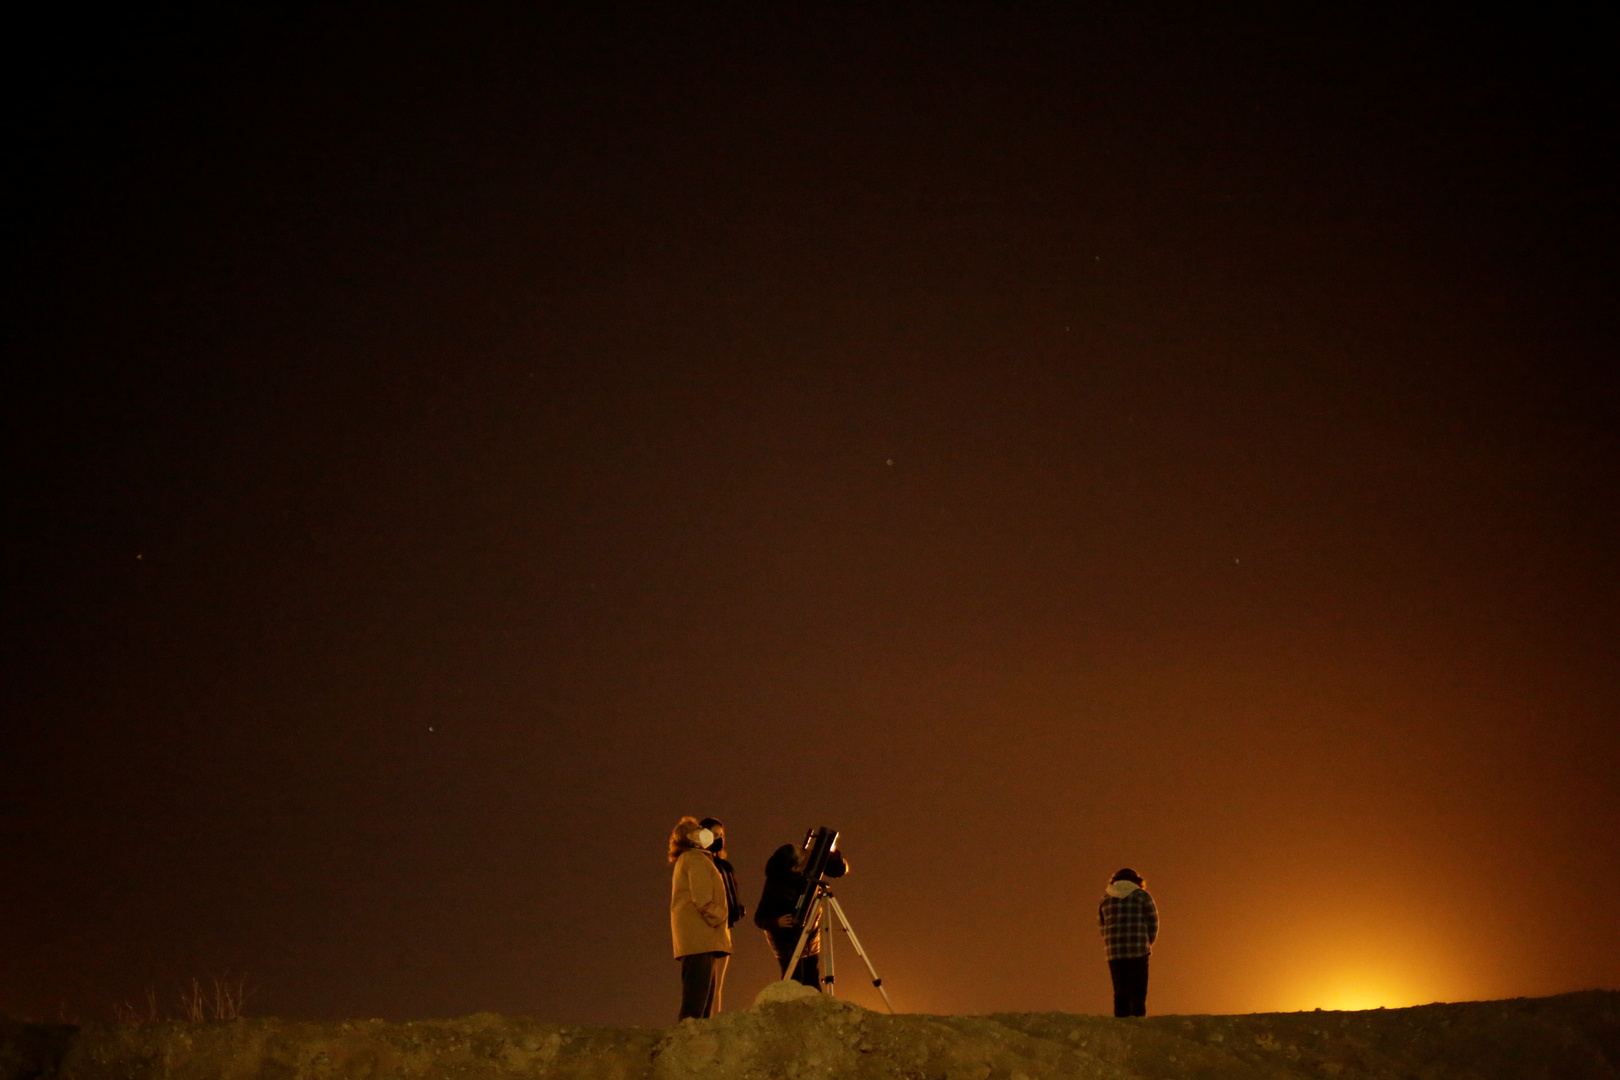 جمعية فلكية سعودية: يمكن رؤية كوكب الزهرة وهو يقترن بعطارد بعد الغروب اليوم